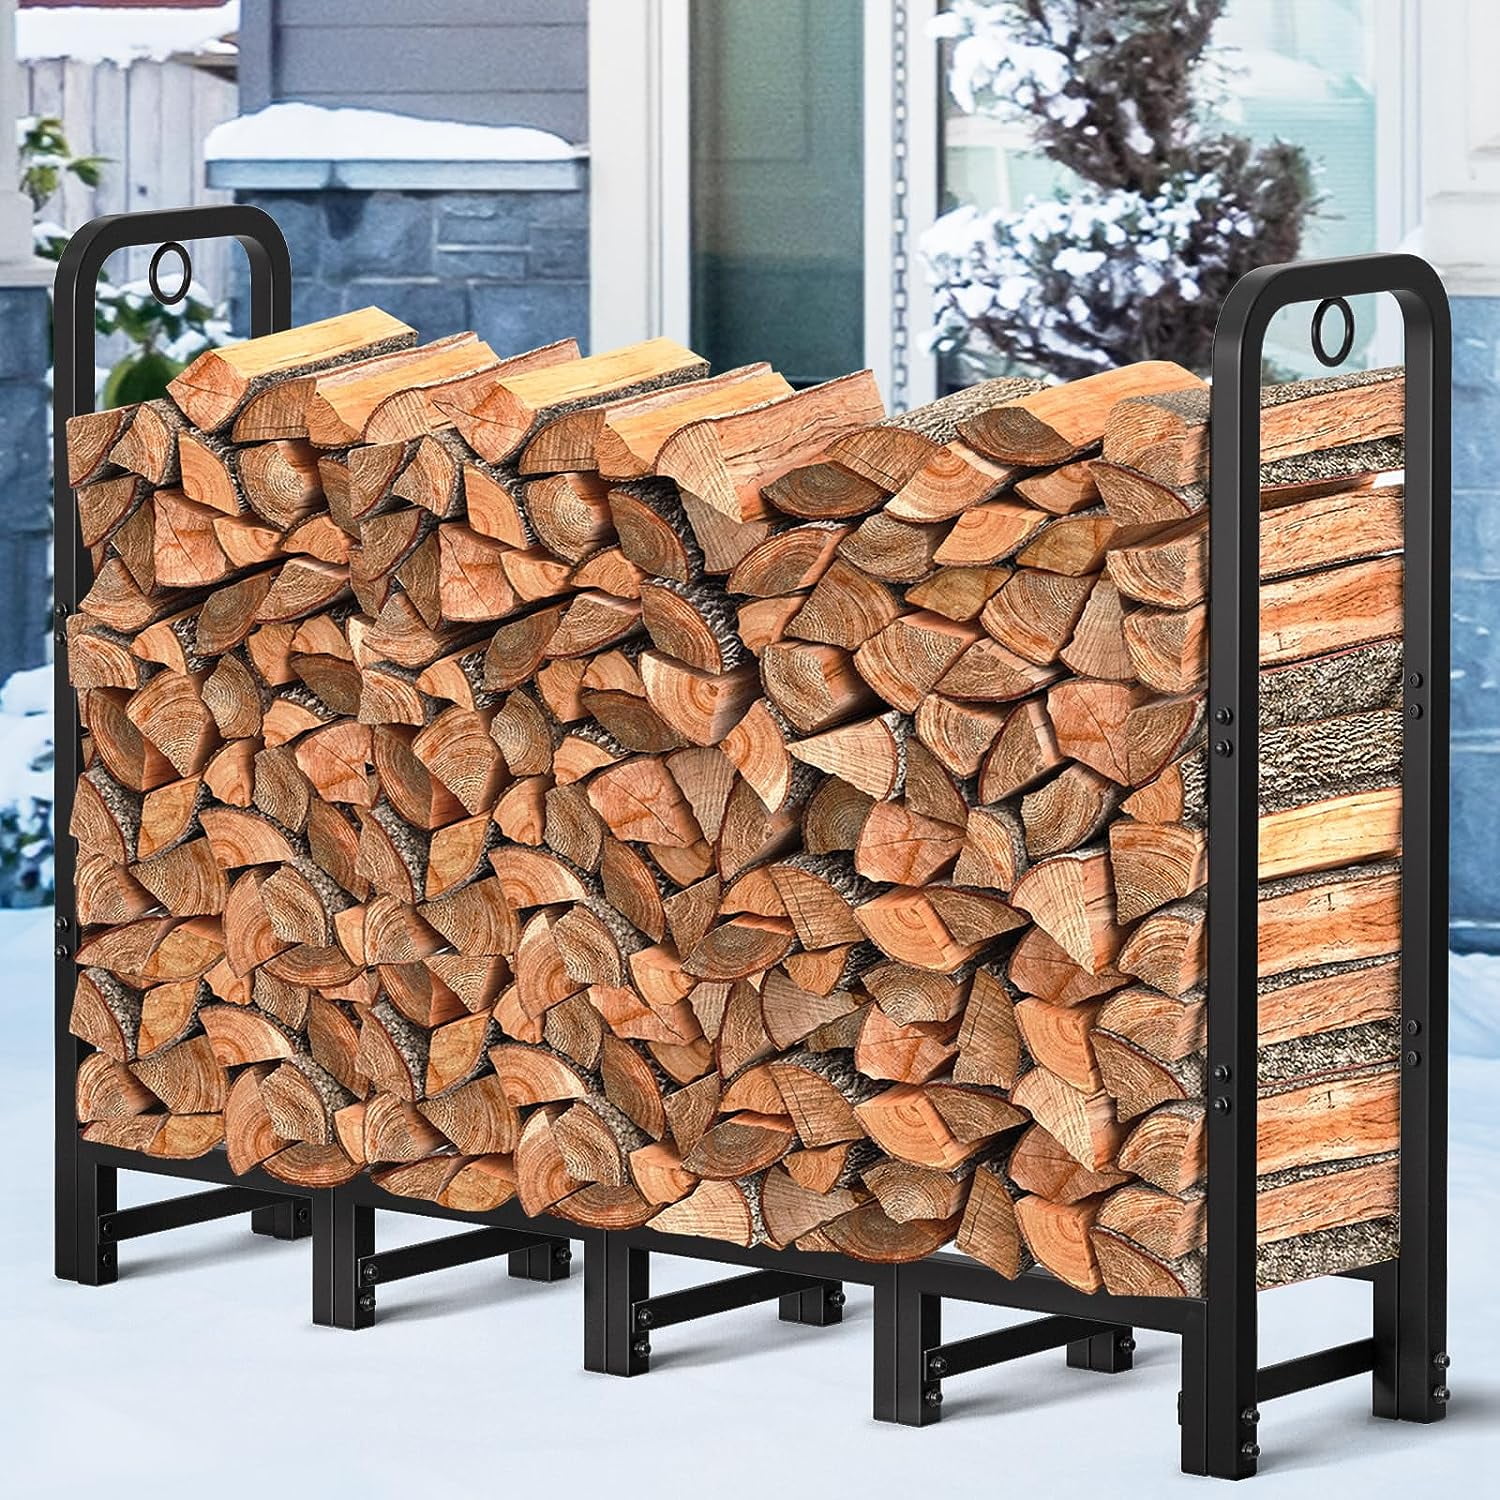 Amagabeli 4ft Firewood Rack Outdoor Log Rack Holder Fireplace